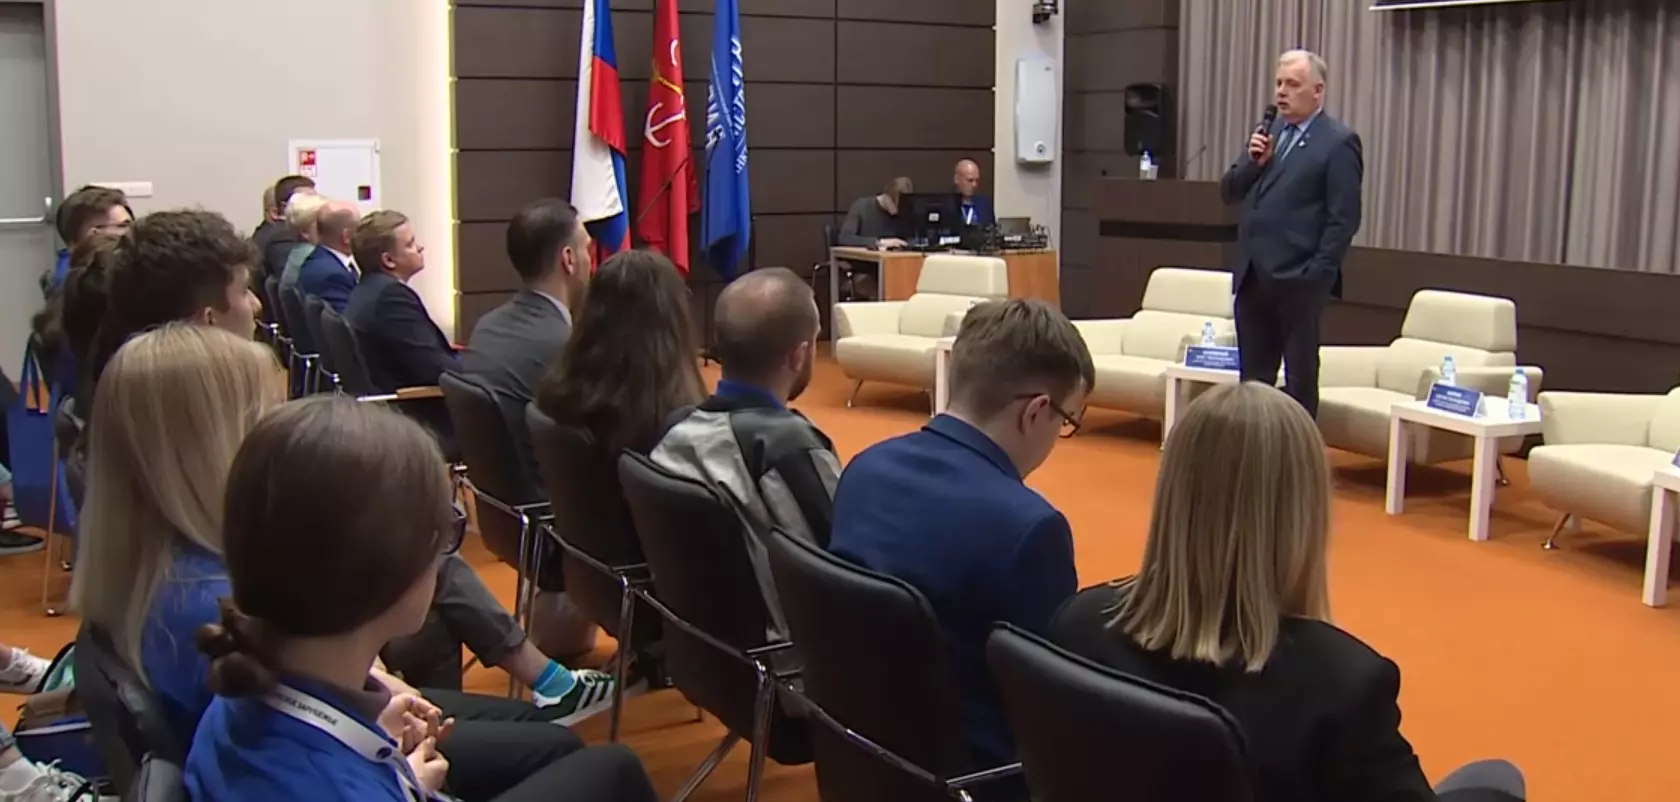 Молодежный форум соотечественников «Русское зарубежье» начался в Санкт-Петербурге